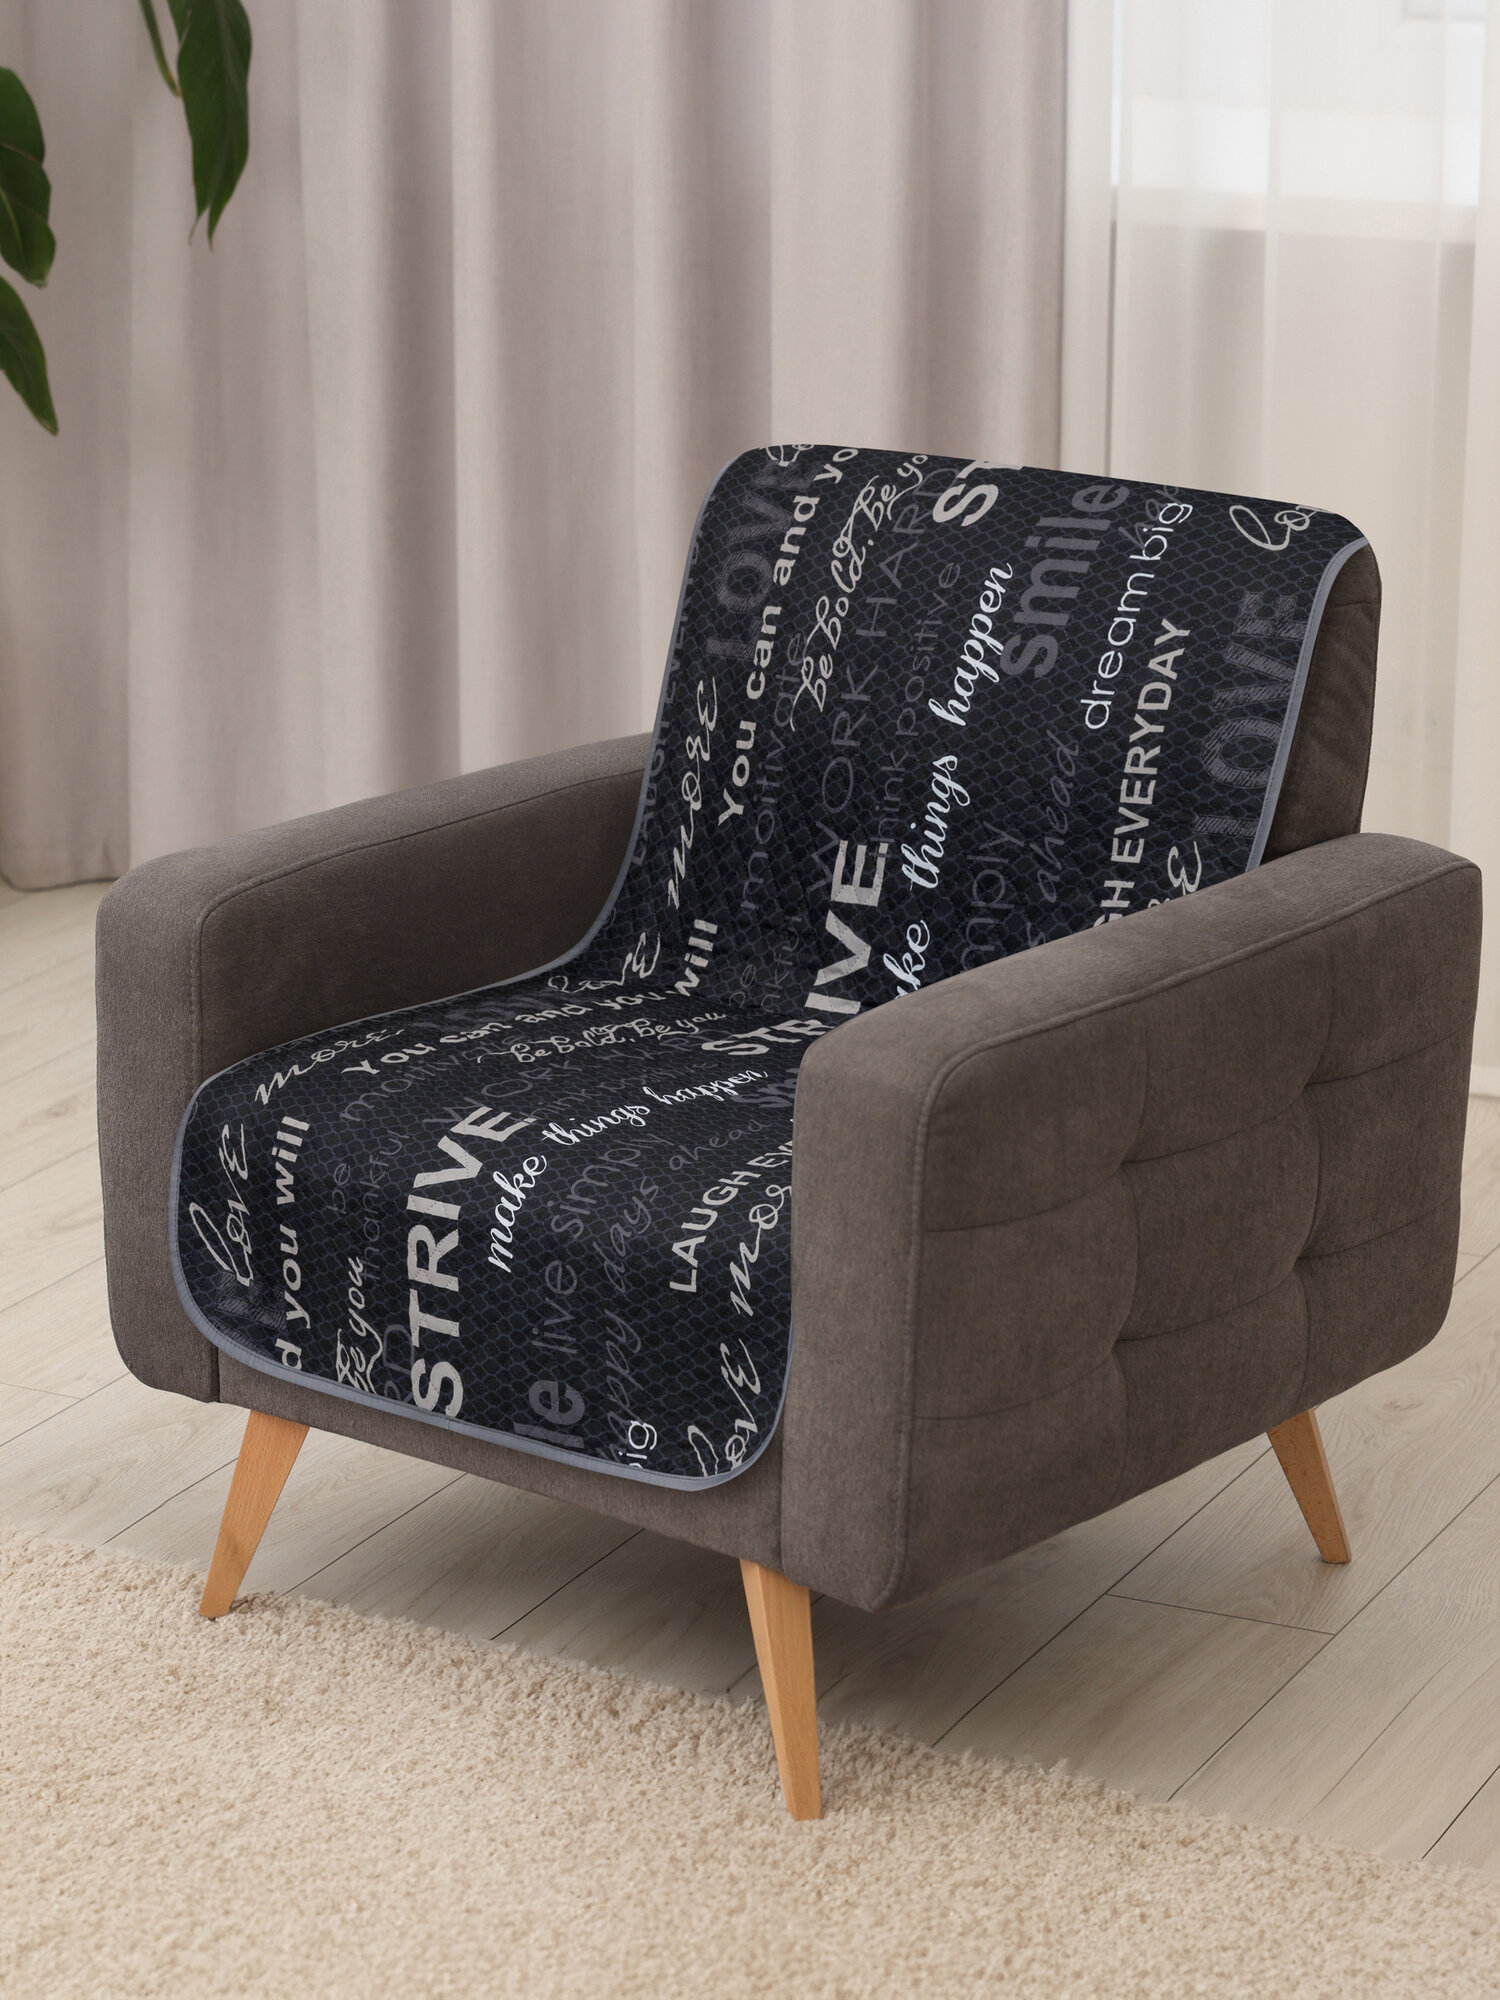 Покрывало накидка на кресло, дивандек Вселенная текстиля Полисатин № 5044, Ультрастеп двухстороннее 90х160 см